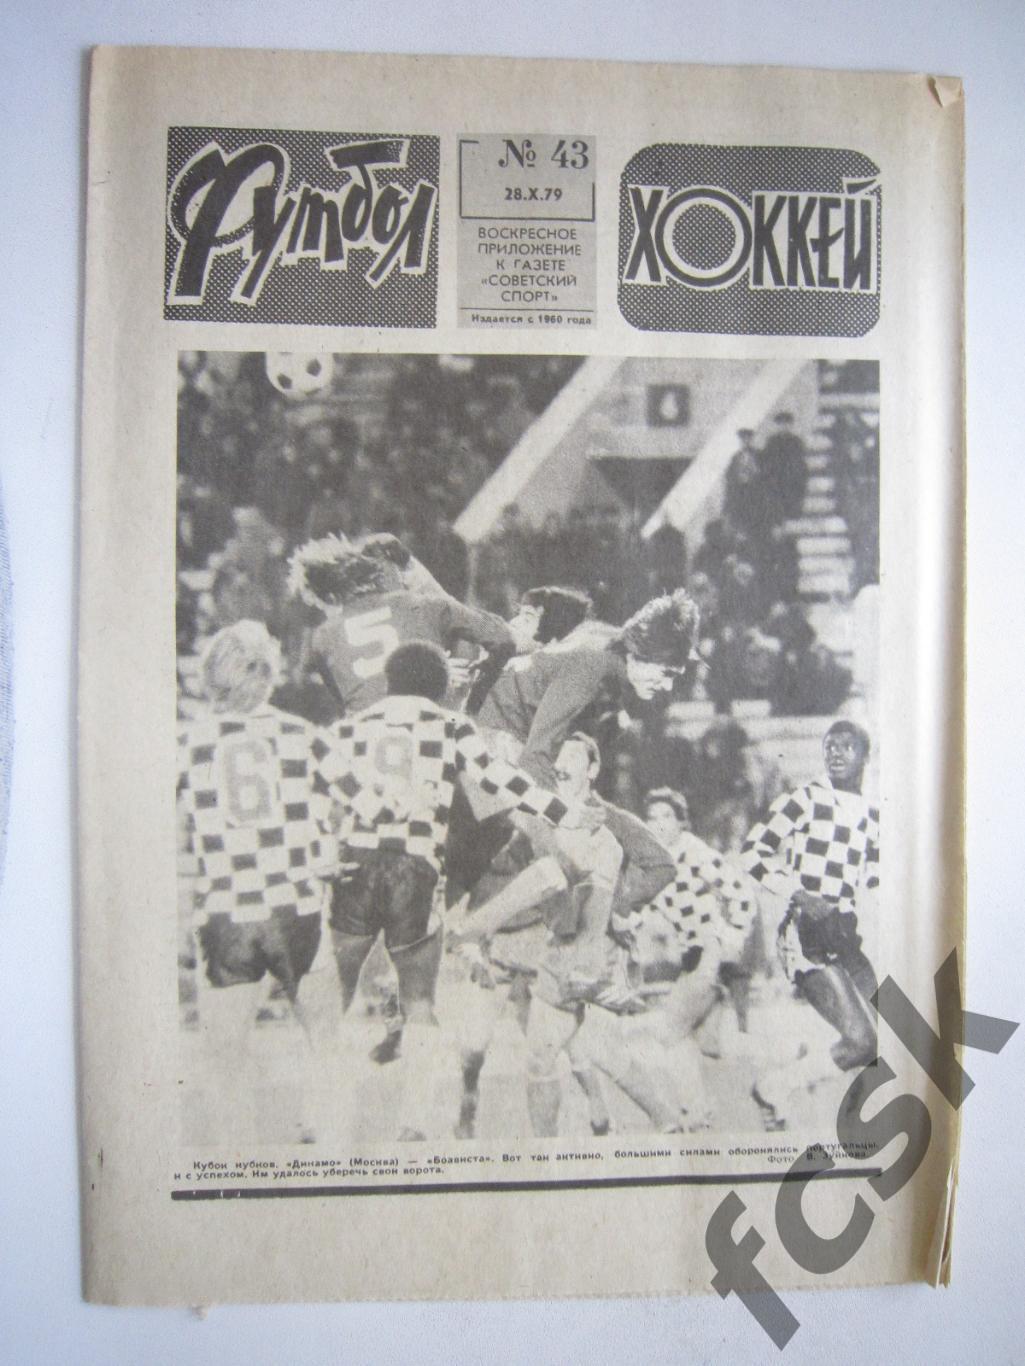 Еженедельник Футбол-Хоккей 1979 № 43 Московская правда (АВ-1)